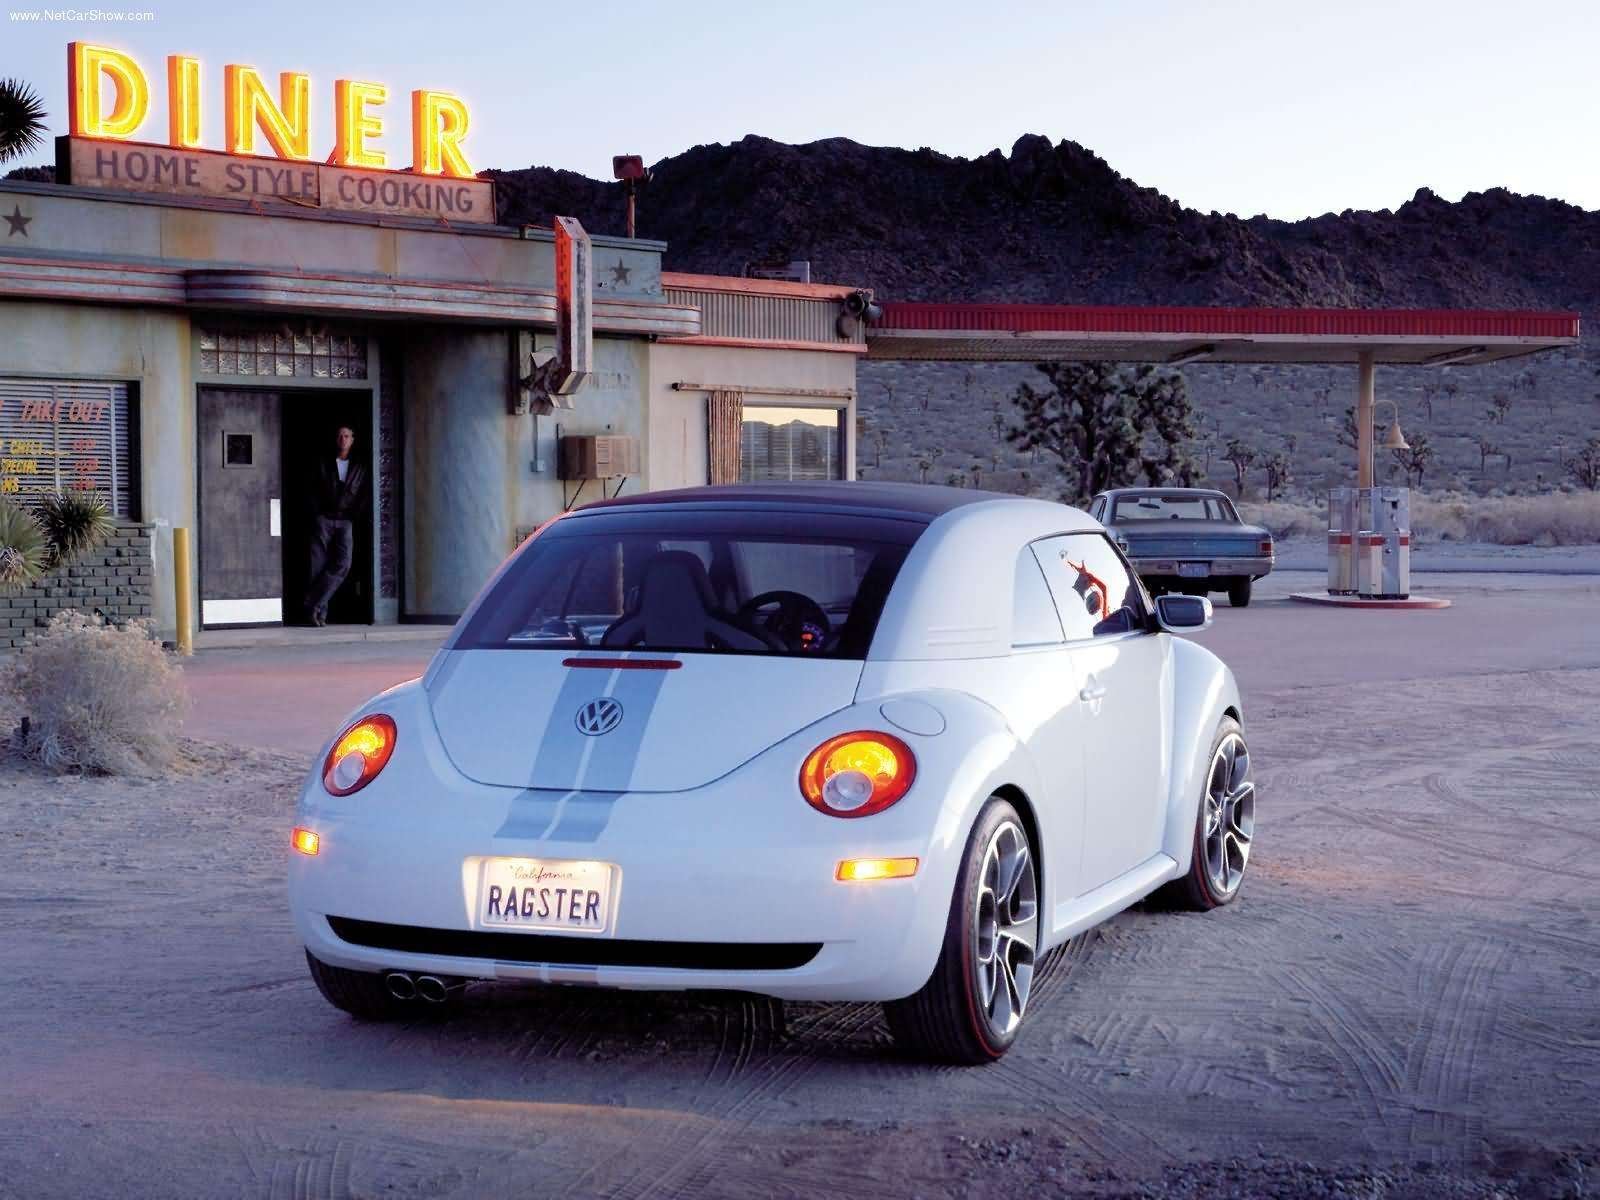 2005 Volkswagen Beetle Ragster Wallpapers